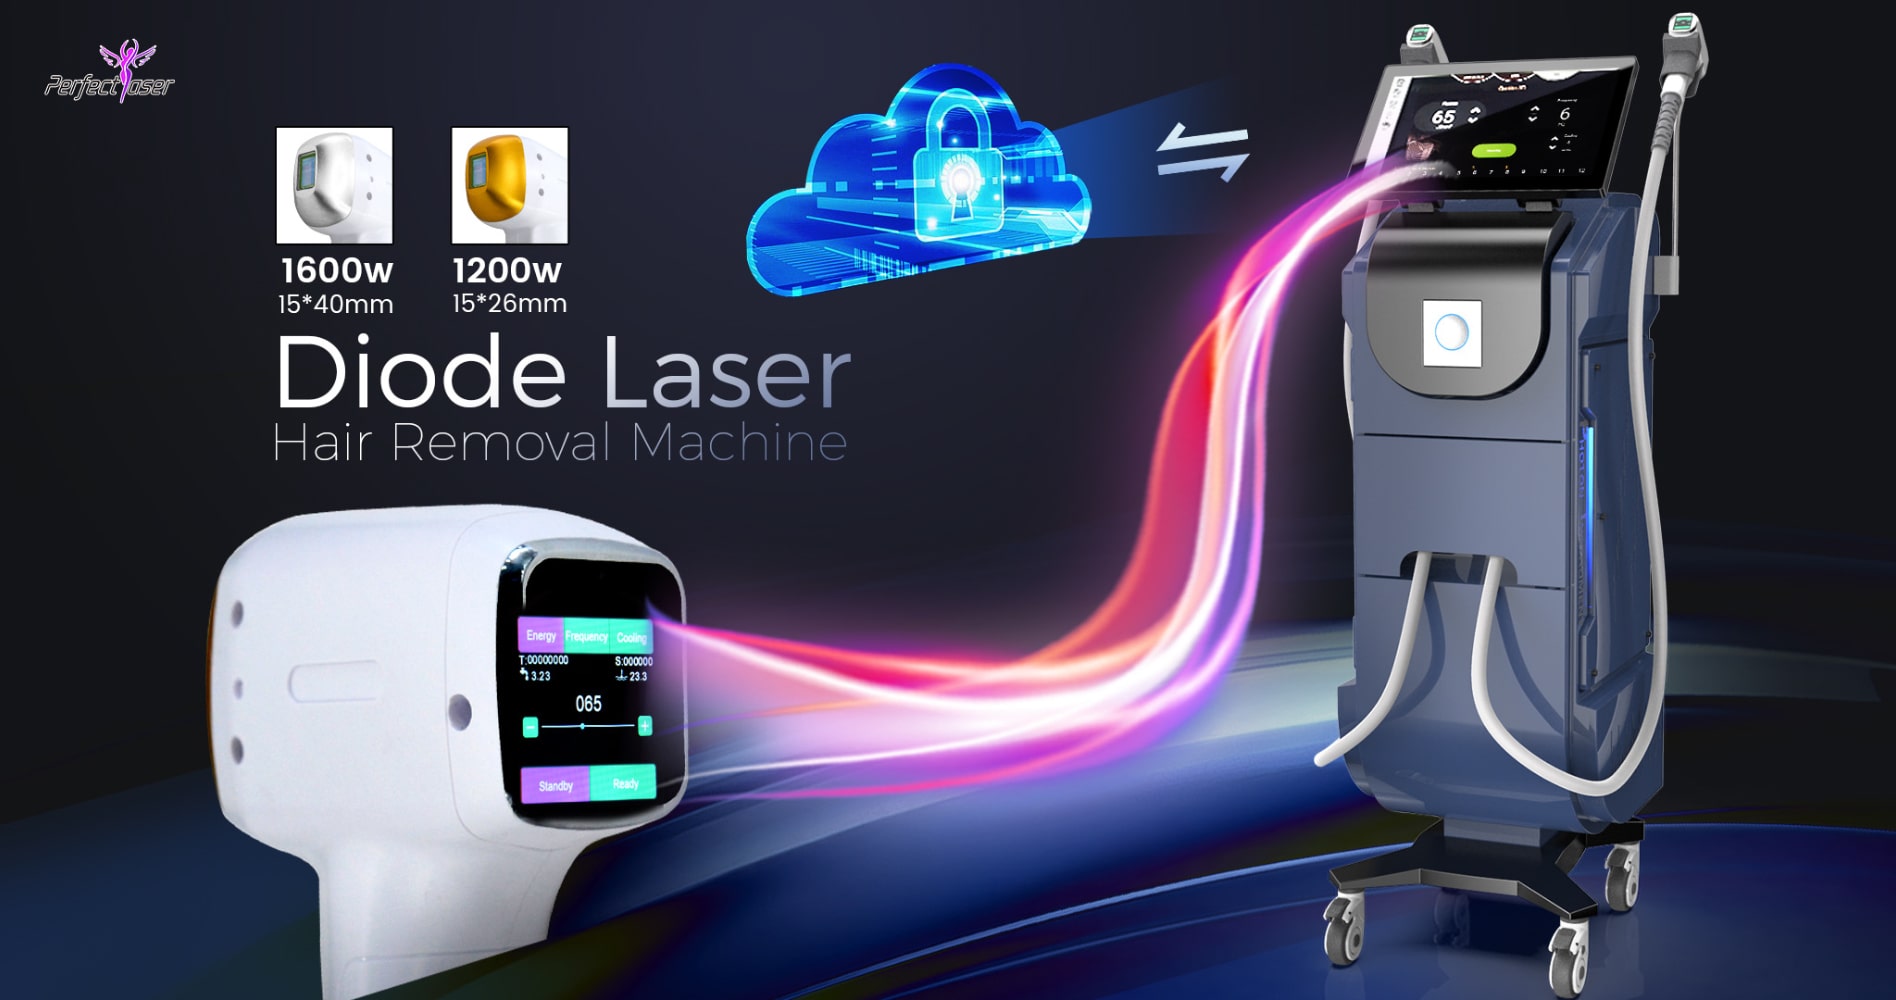 دستگاه لیزر موهای زائد دایود 2 هندپیس 1200 وات و 1600 وات - PerfectLaser Diode Laser Hair Removal Machine 2 handpiece 1200w, 1600w